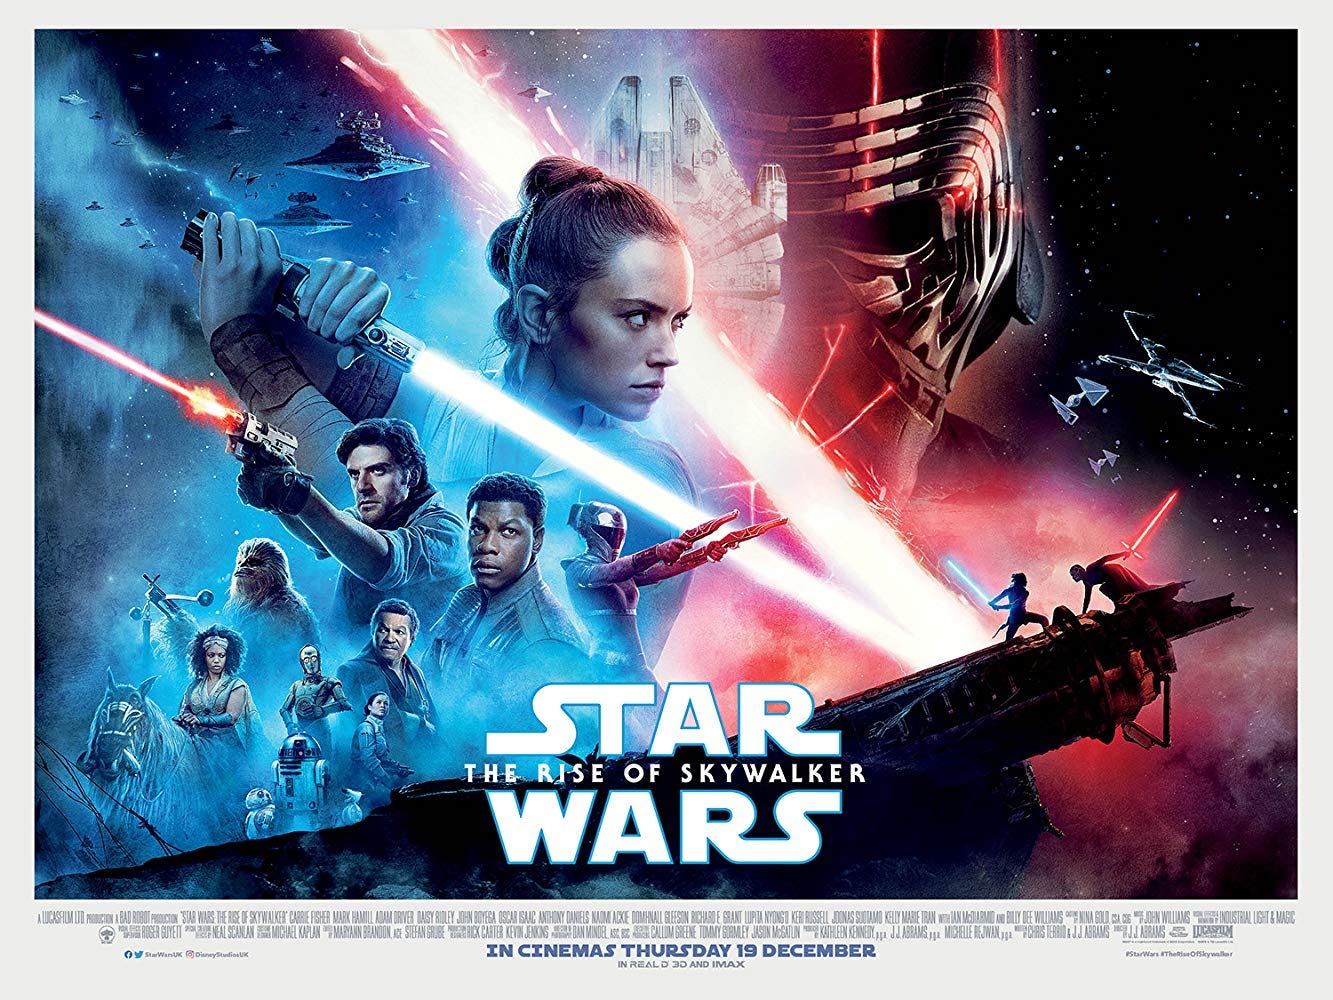 Star Wars' on IMDb - IMDb